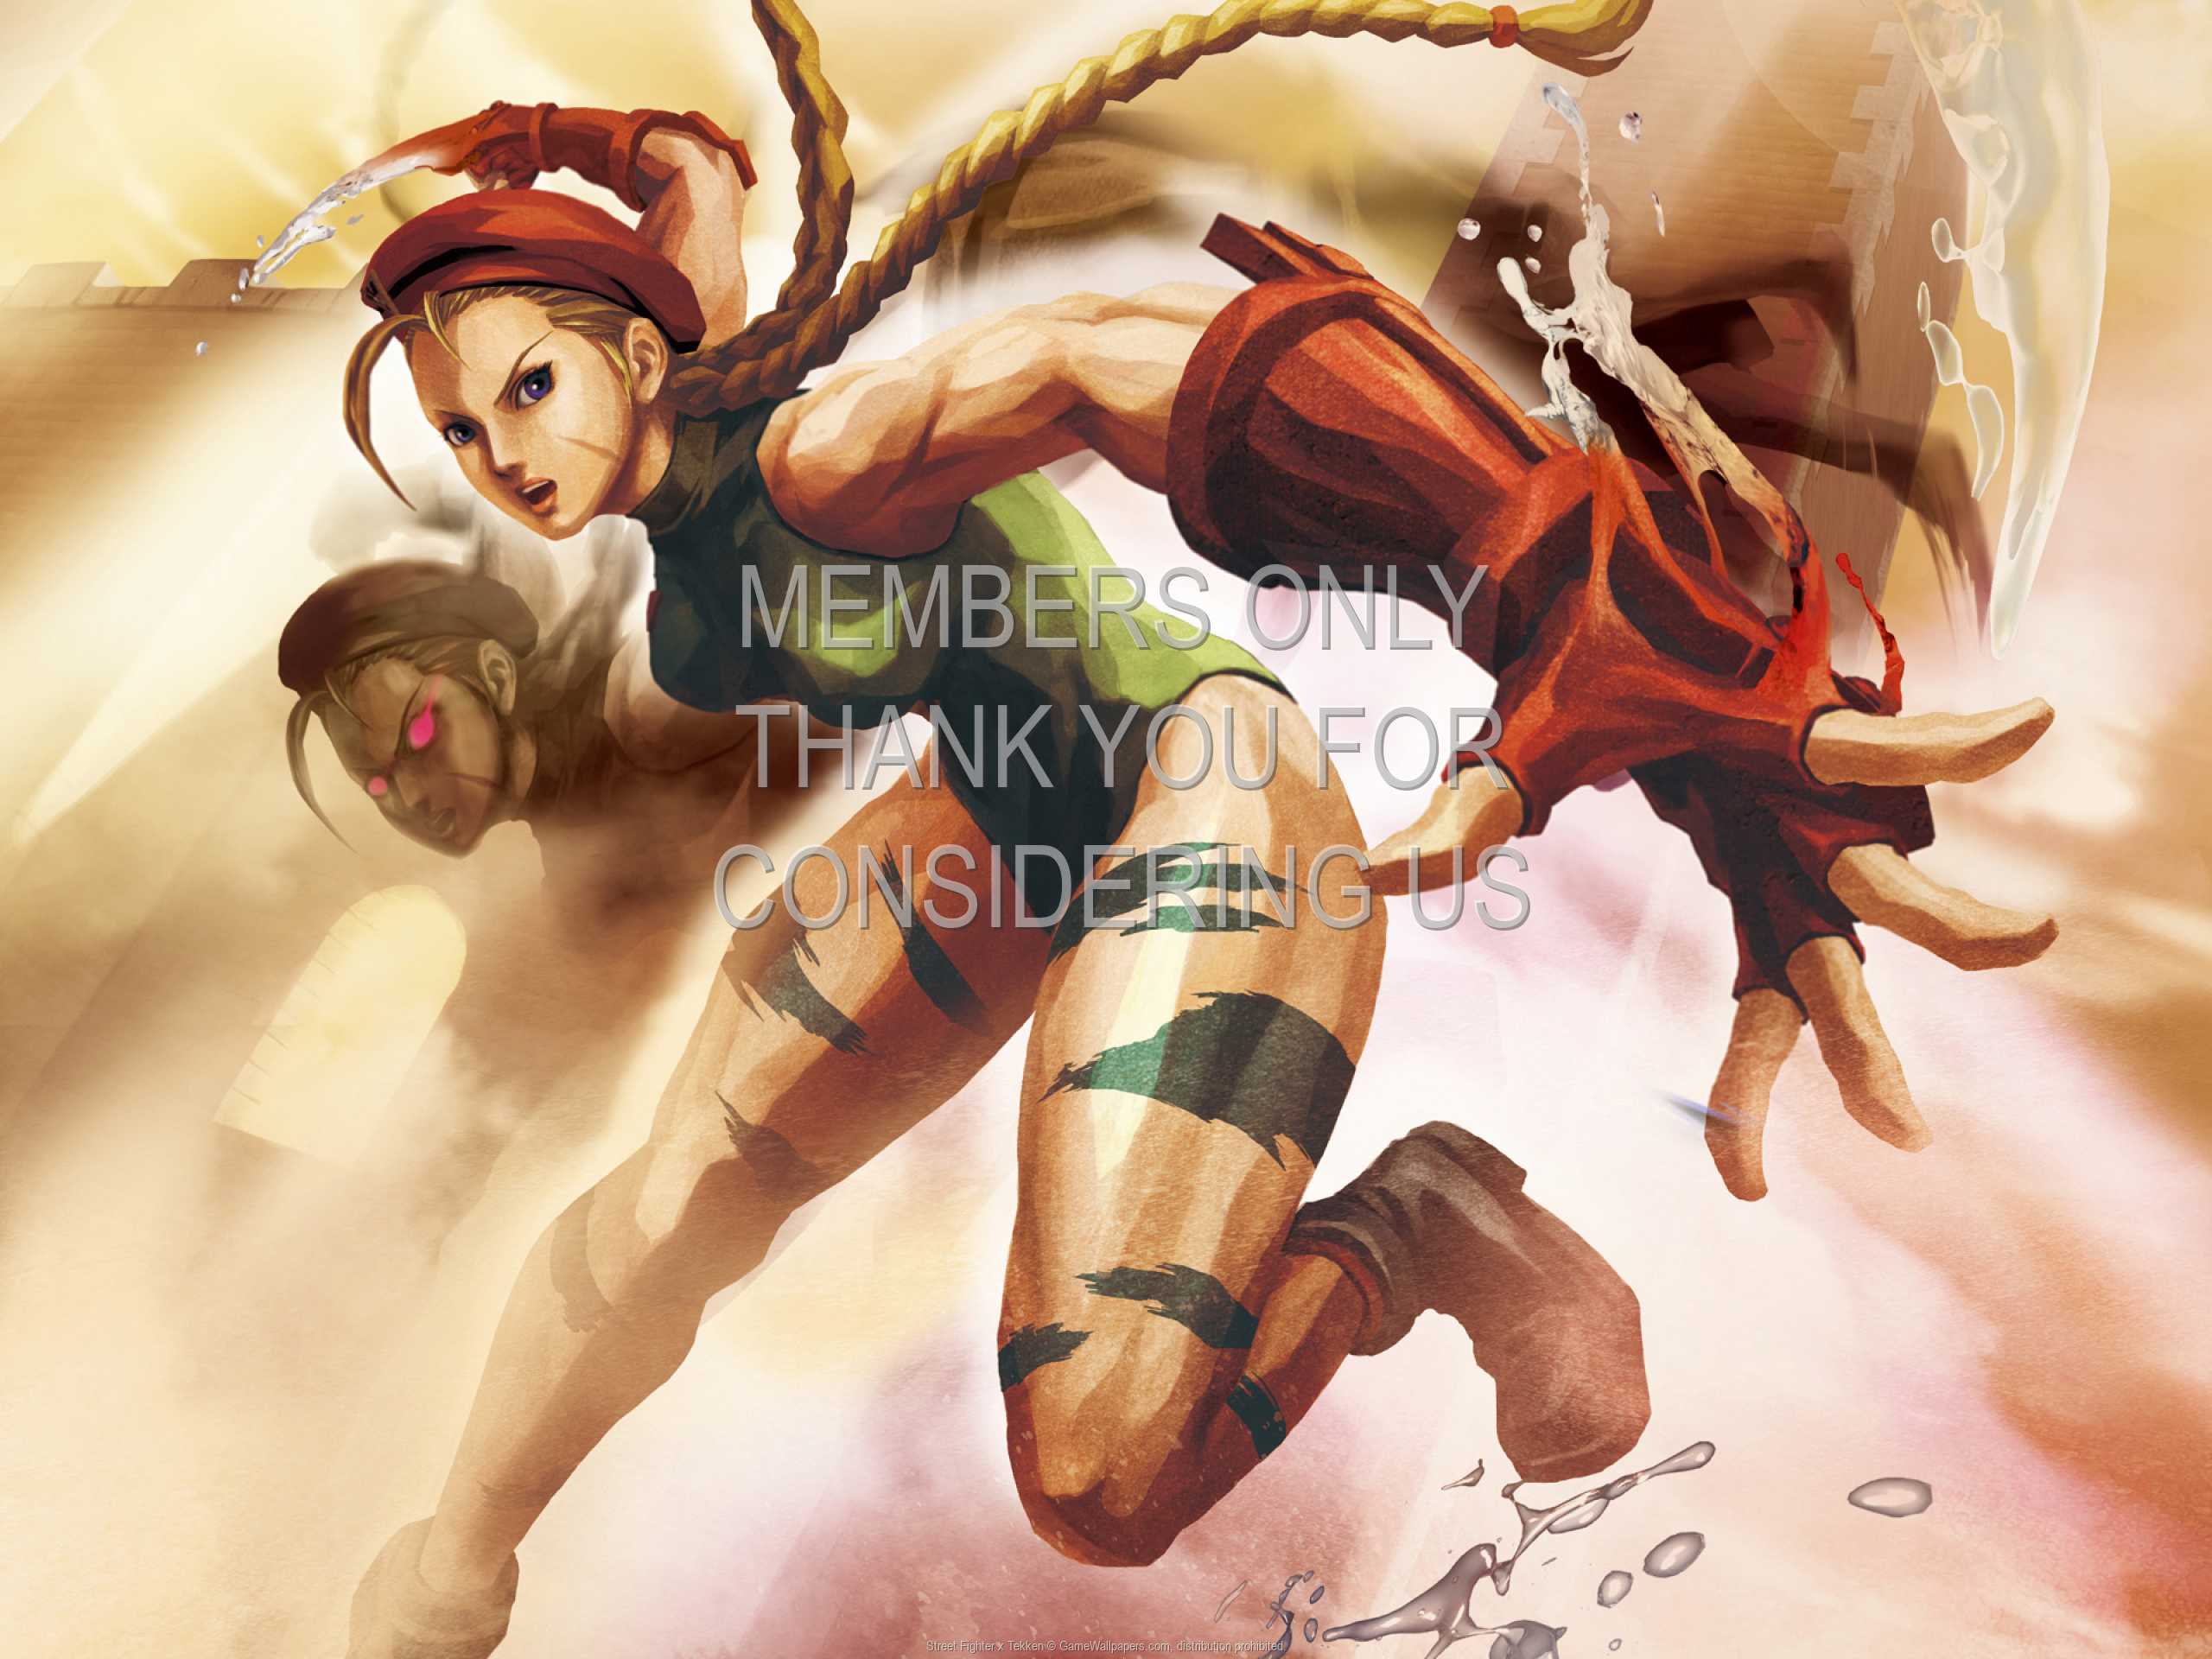 Street Fighter x Tekken 1080p Horizontal Mobile wallpaper or background 01